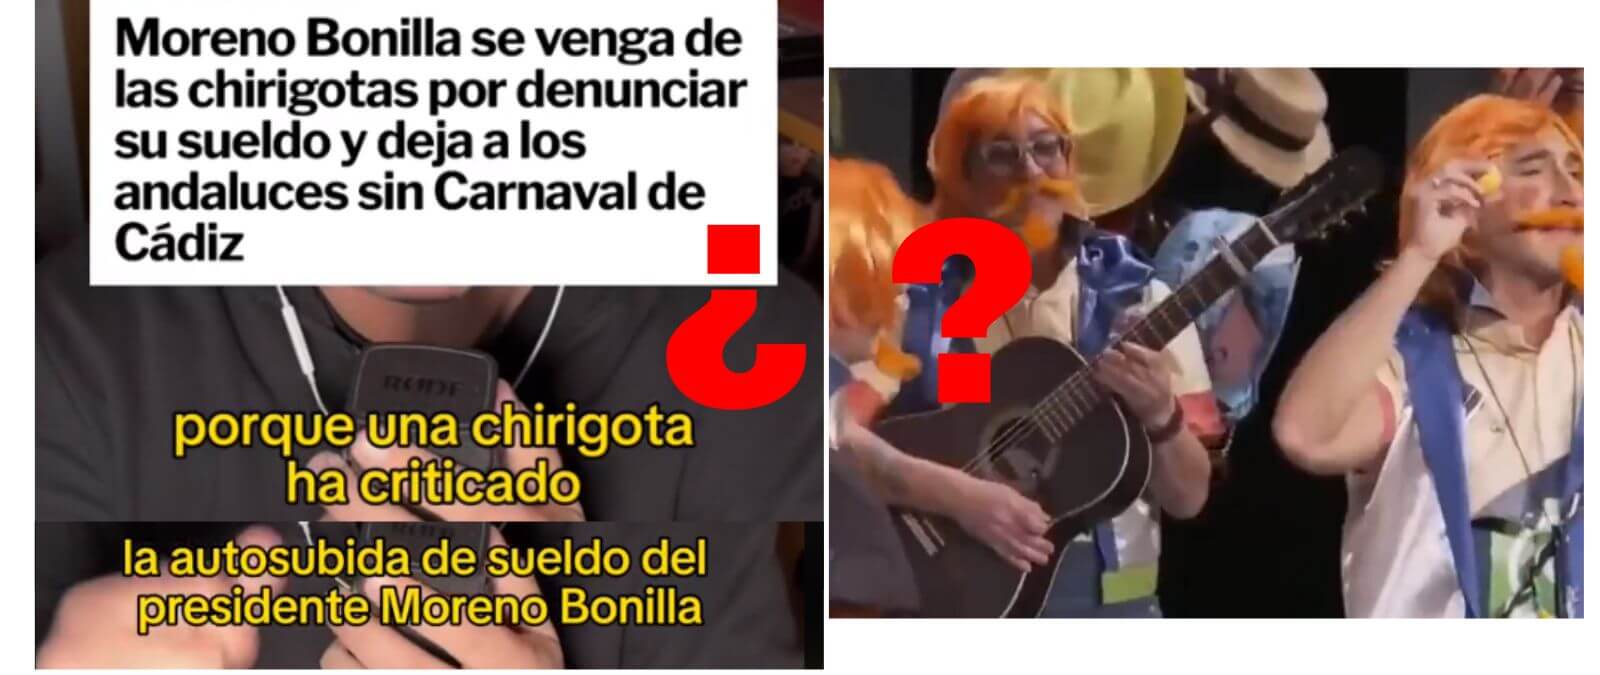 Qué sabemos de que Canal Sur Radio haya “censurado” supuestamente el carnaval de Cádiz después de que “una chirigota ha criticado la subida de sueldo” de Juanma Moreno